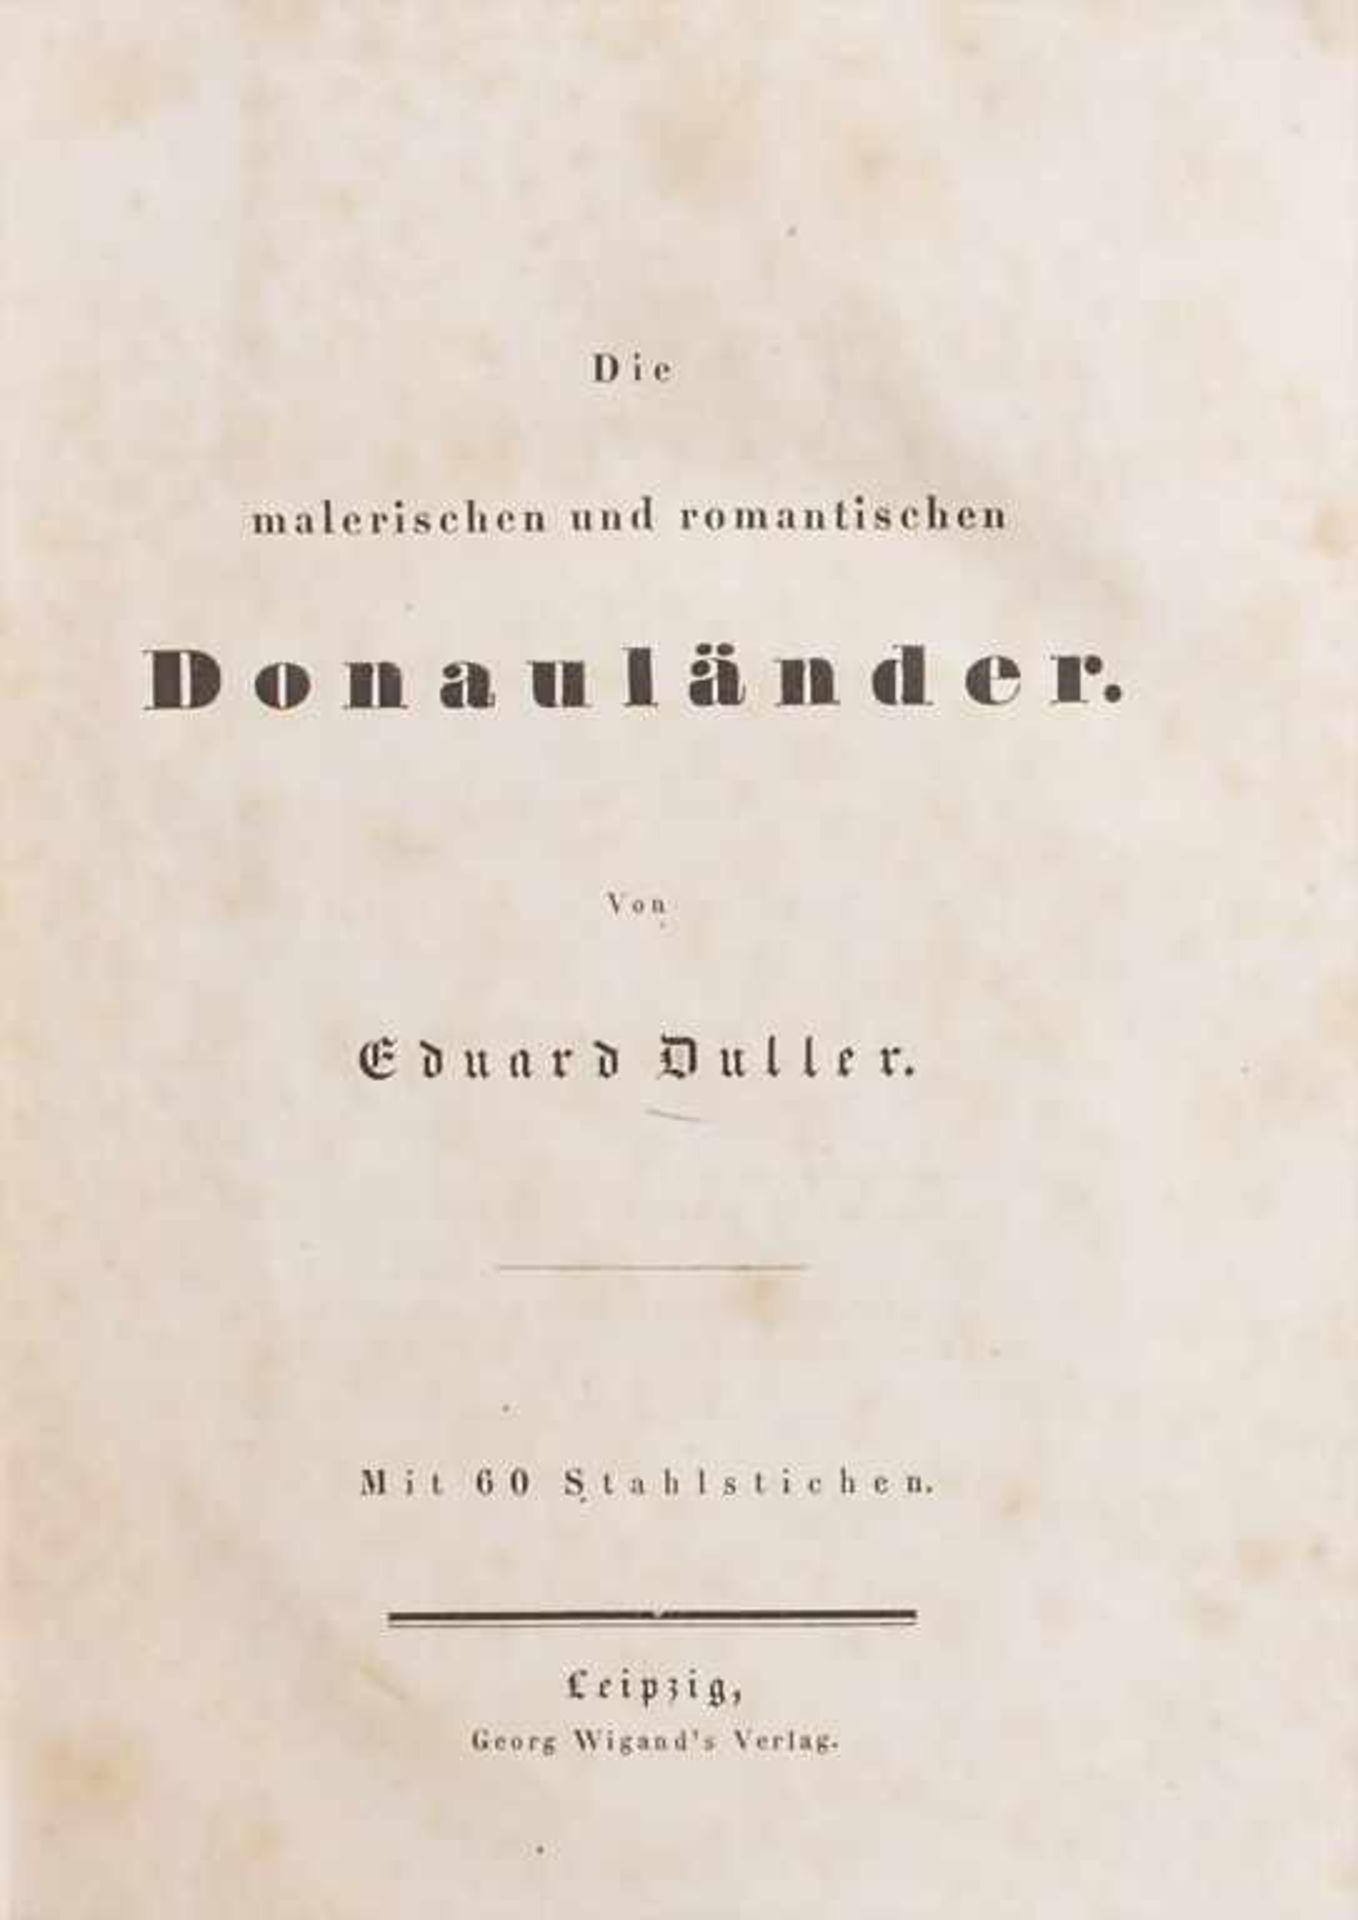 Eduard Duller: 'Die malerischen und romantischen Donauländer'